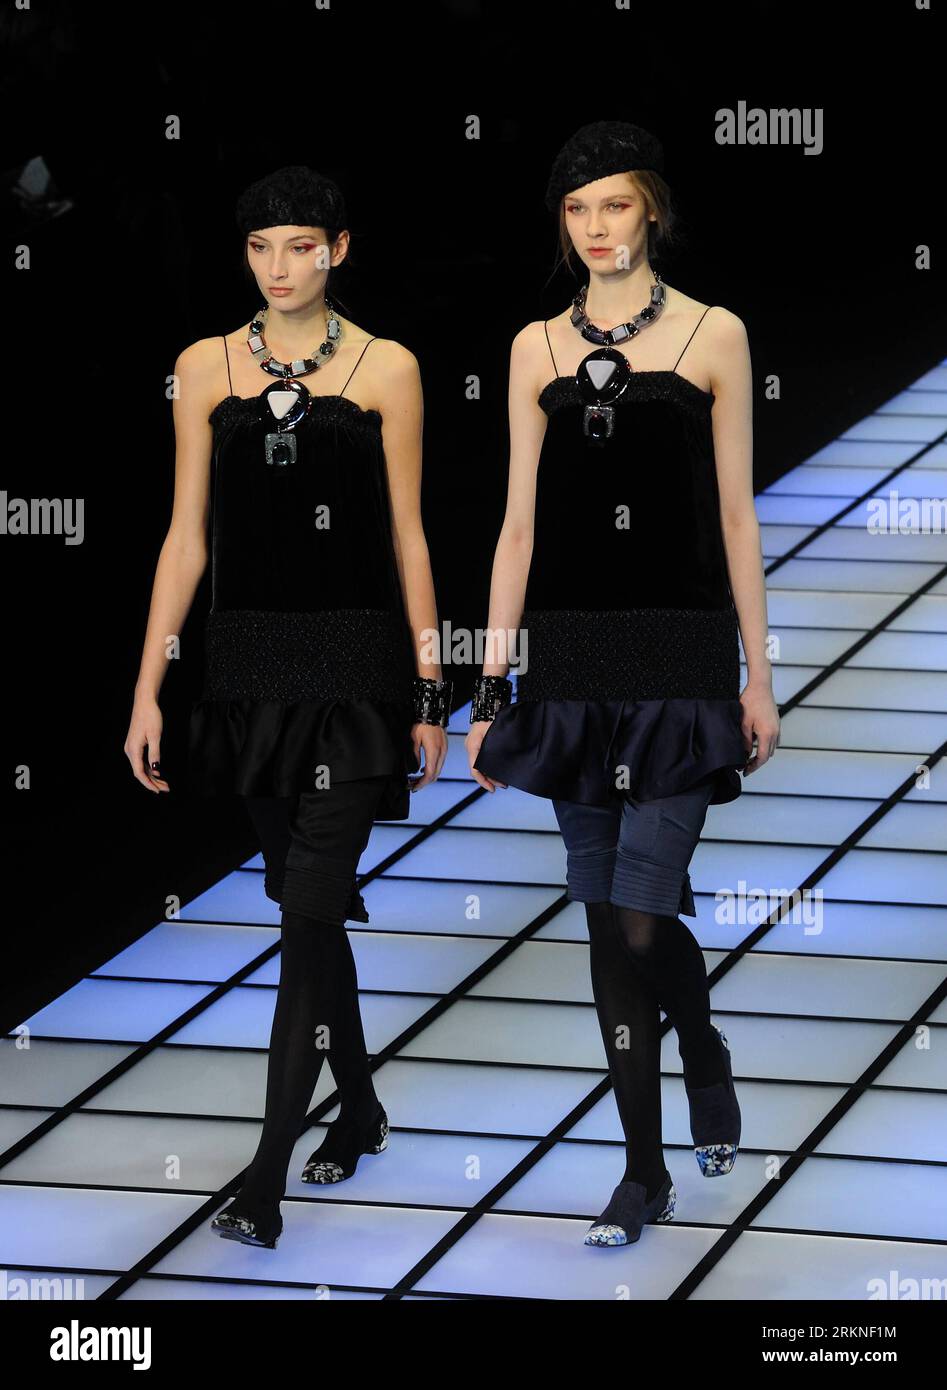 Bildnummer : 57108112 Datum : 25.02.2012 Copyright : imago/Xinhua (120226) -- MILAN, 26 février 2012 (Xinhua) -- des mannequins présentent des créations de la marque italienne Emporio Armani lors de la Fashion week de Milan vêtements pour femmes automne/hiver 2012 à Milan, Italie, 25 février 2012. (Xinhua/Wang Qingqin) (zhs) ITALY-MILAN-FASHION WEEK-EMPORIO ARMANI PUBLICATIONxNOTxINxCHN Kultur Entertainment Fashion Modenschau Modewoche Mailand Damenmode xdp x0x premiumd 2012 hoch 57108112 Date 25 02 2012 Copyright Imago XINHUA Milan Fév 26 2012 XINHUA Models présentent des créations de la marque de mode italienne Emporio AR Banque D'Images